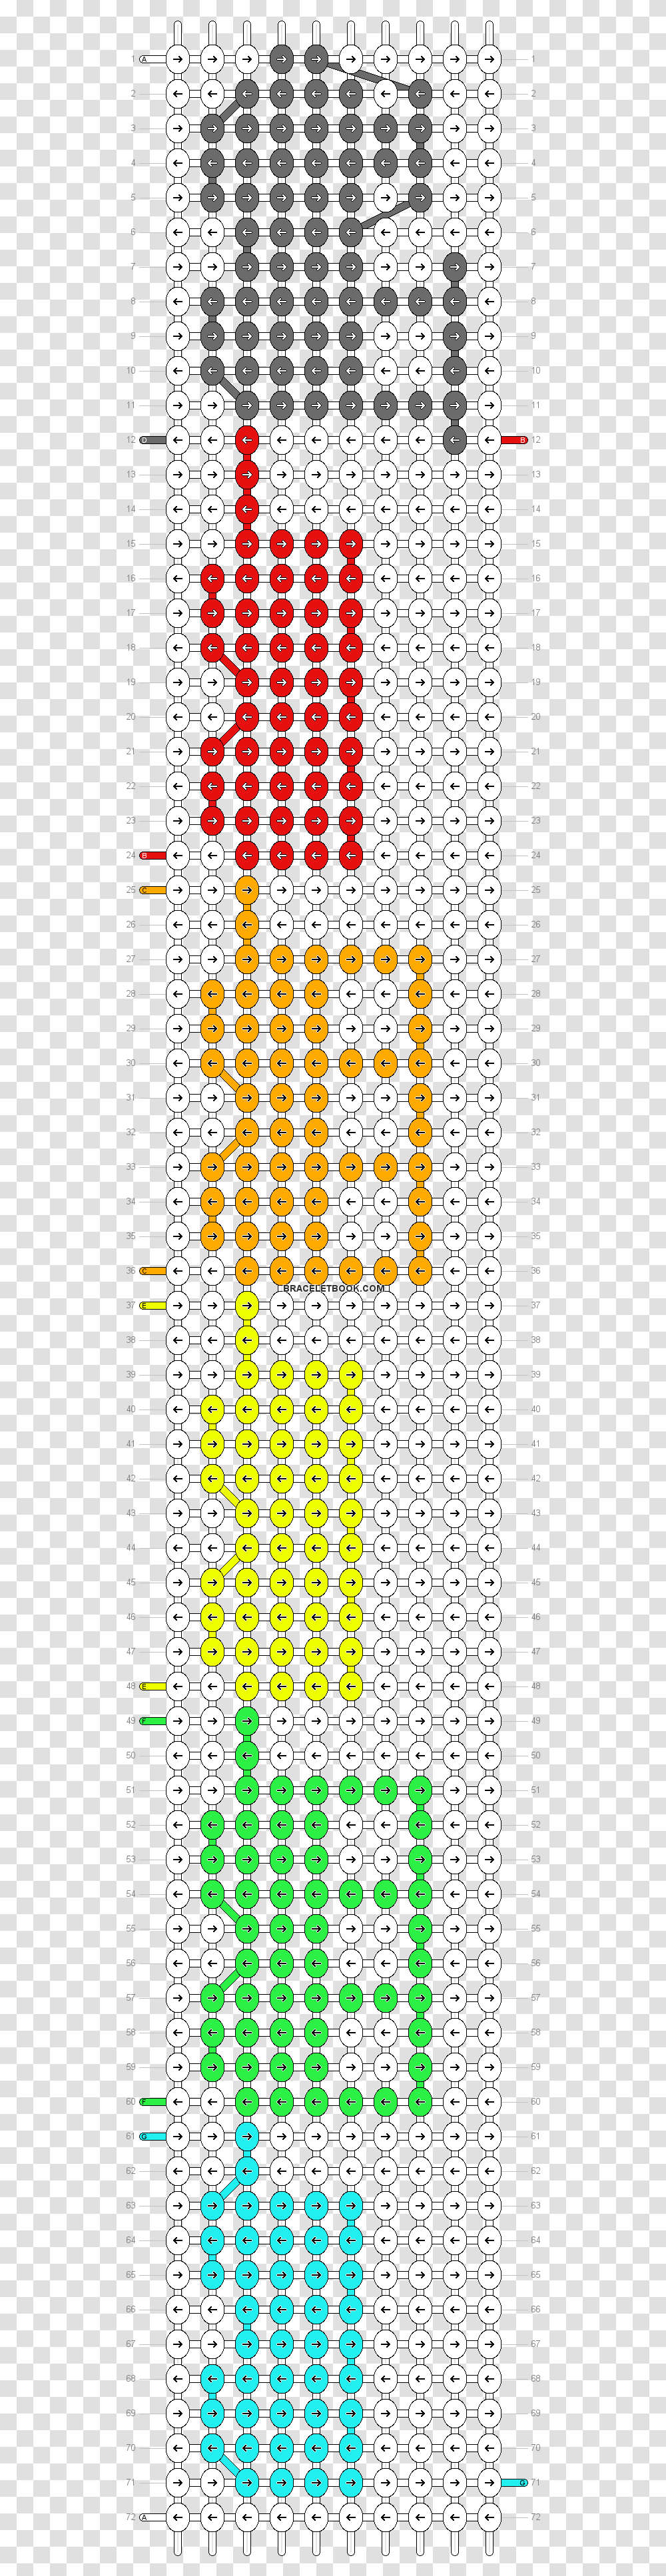 Friendship Bracelet Patterns Spn, Number, Pac Man Transparent Png